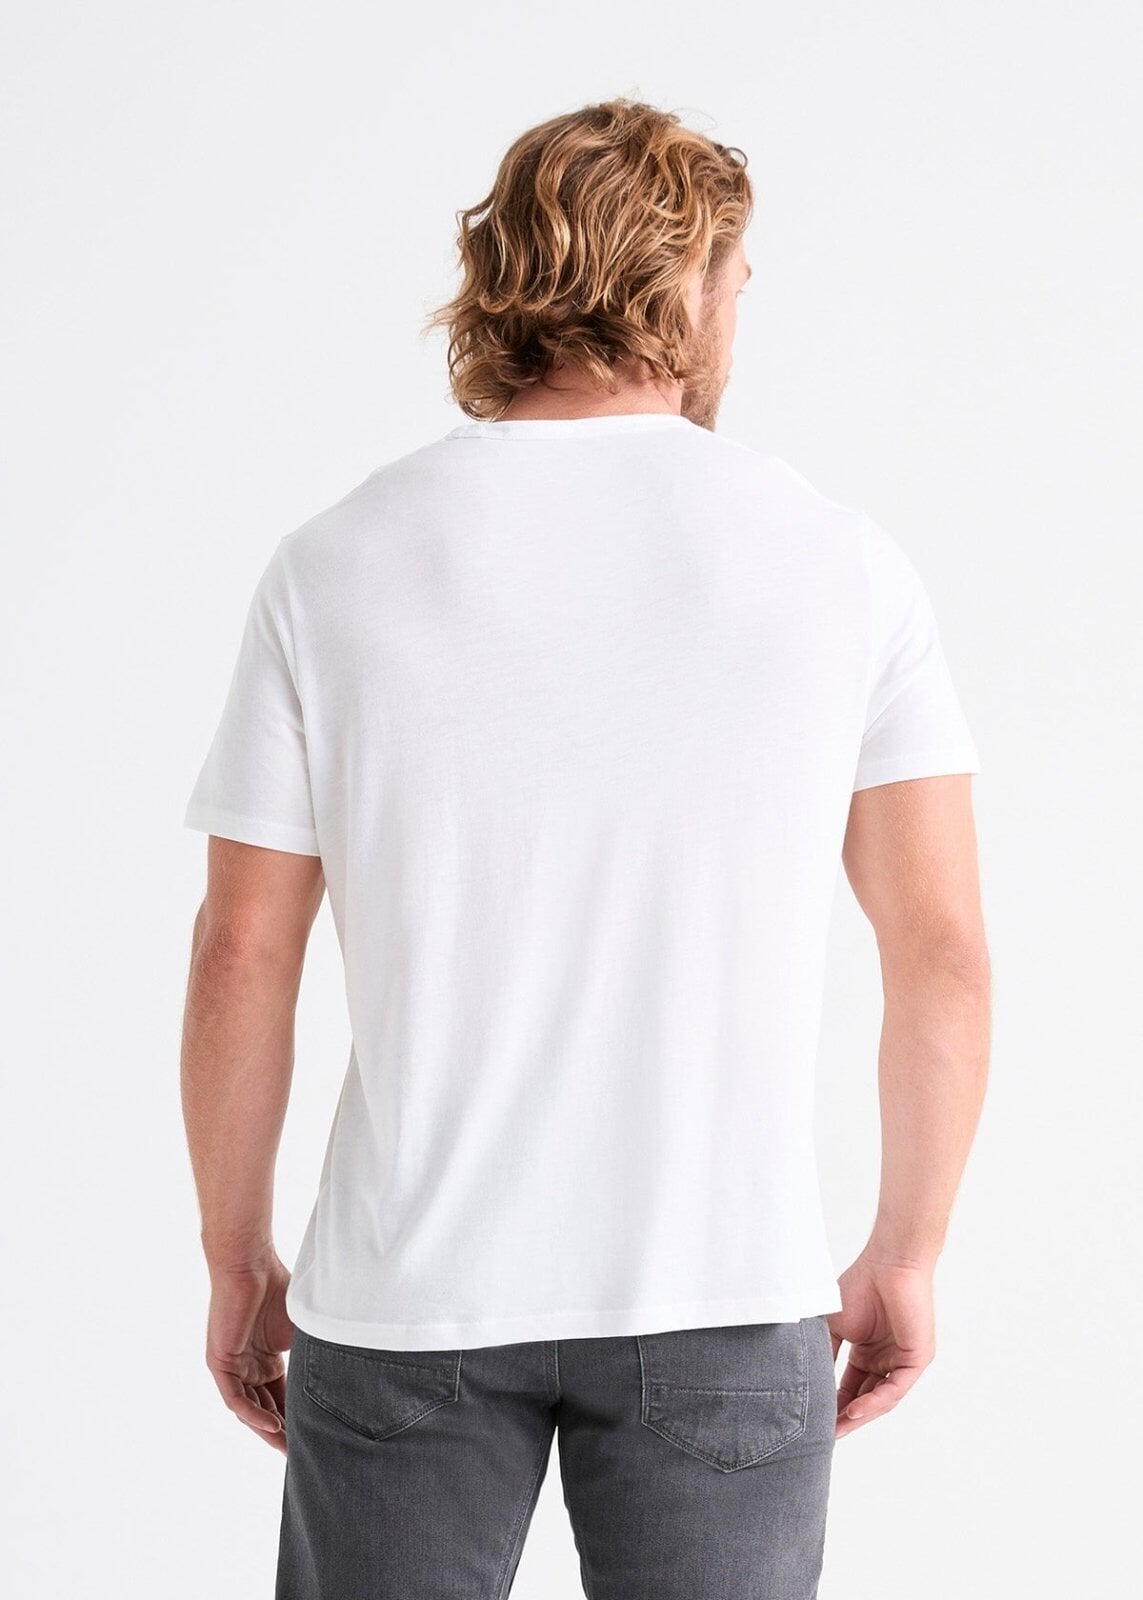 mens 100% Pima cotton white t-shirt back